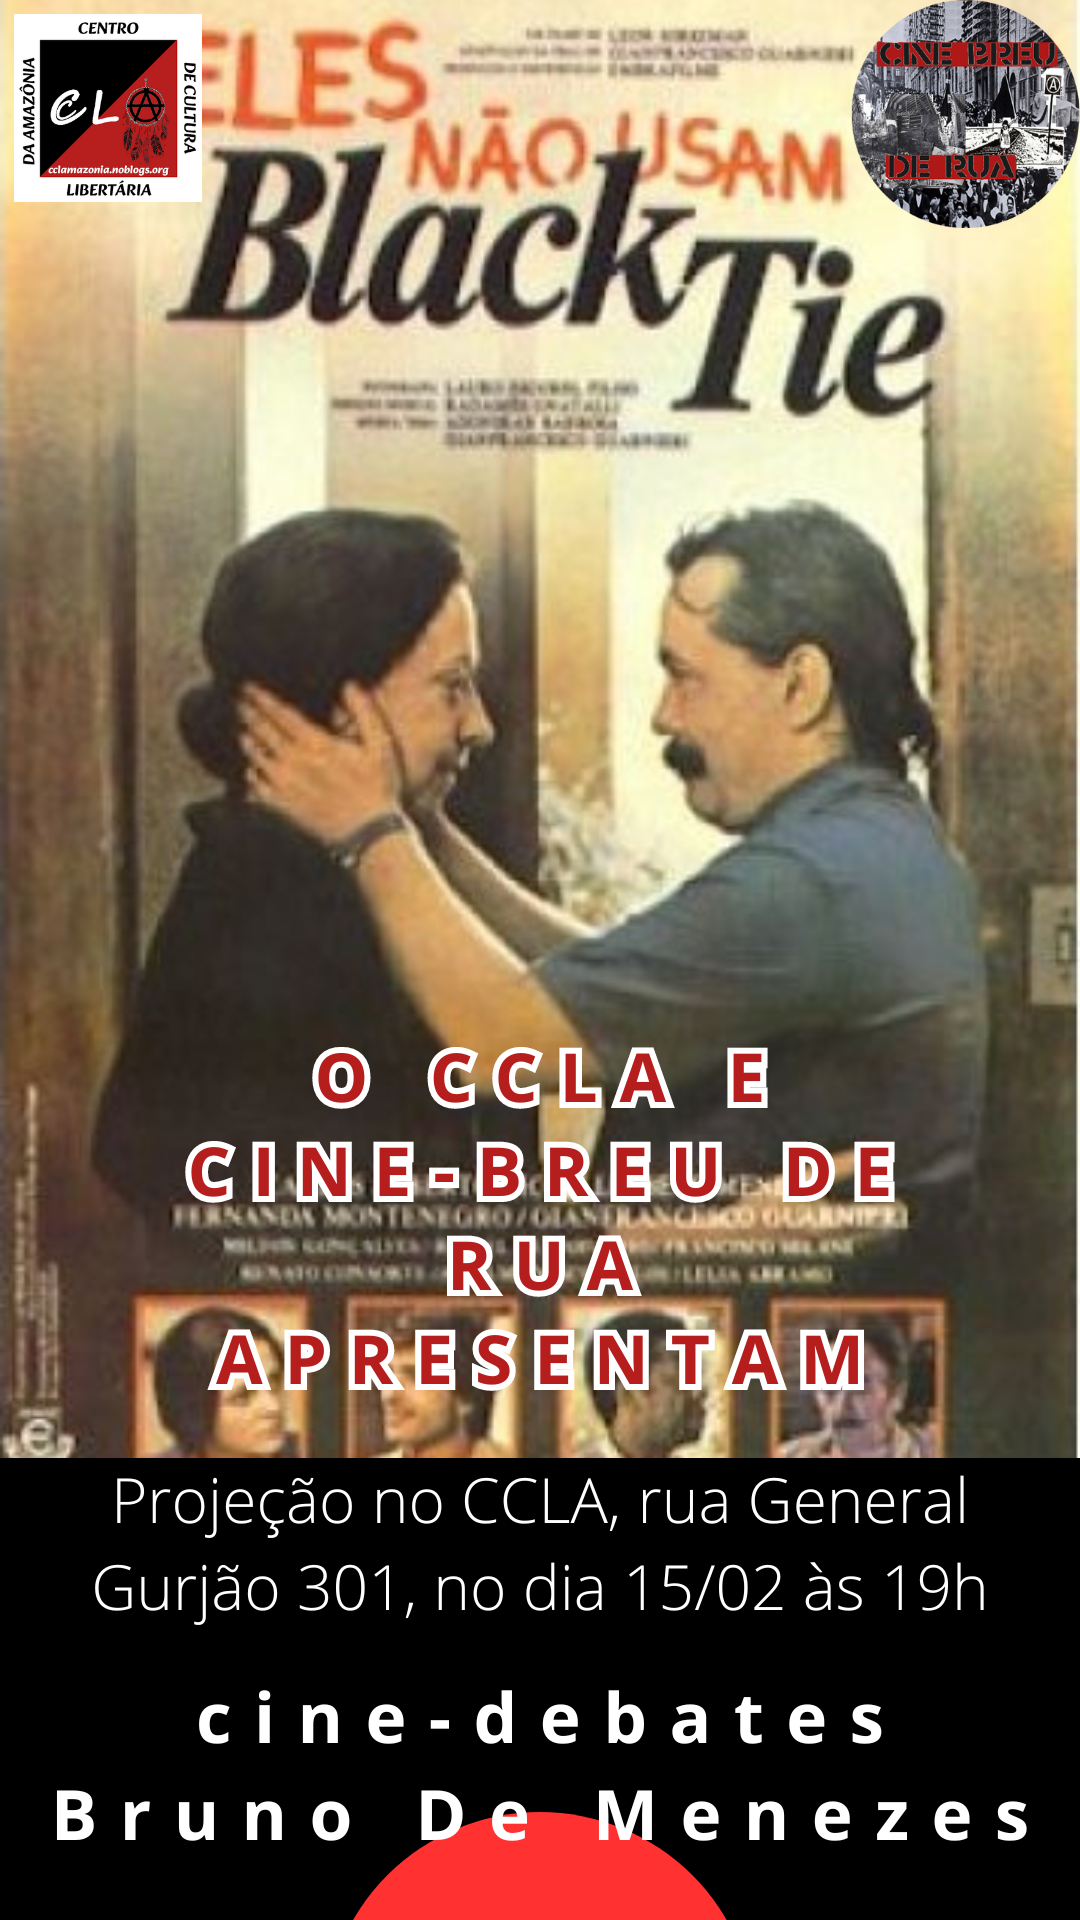 Projeção do filme Eles não usam Black-Tie (Brasil, 1981) no cine-debate do CCLA